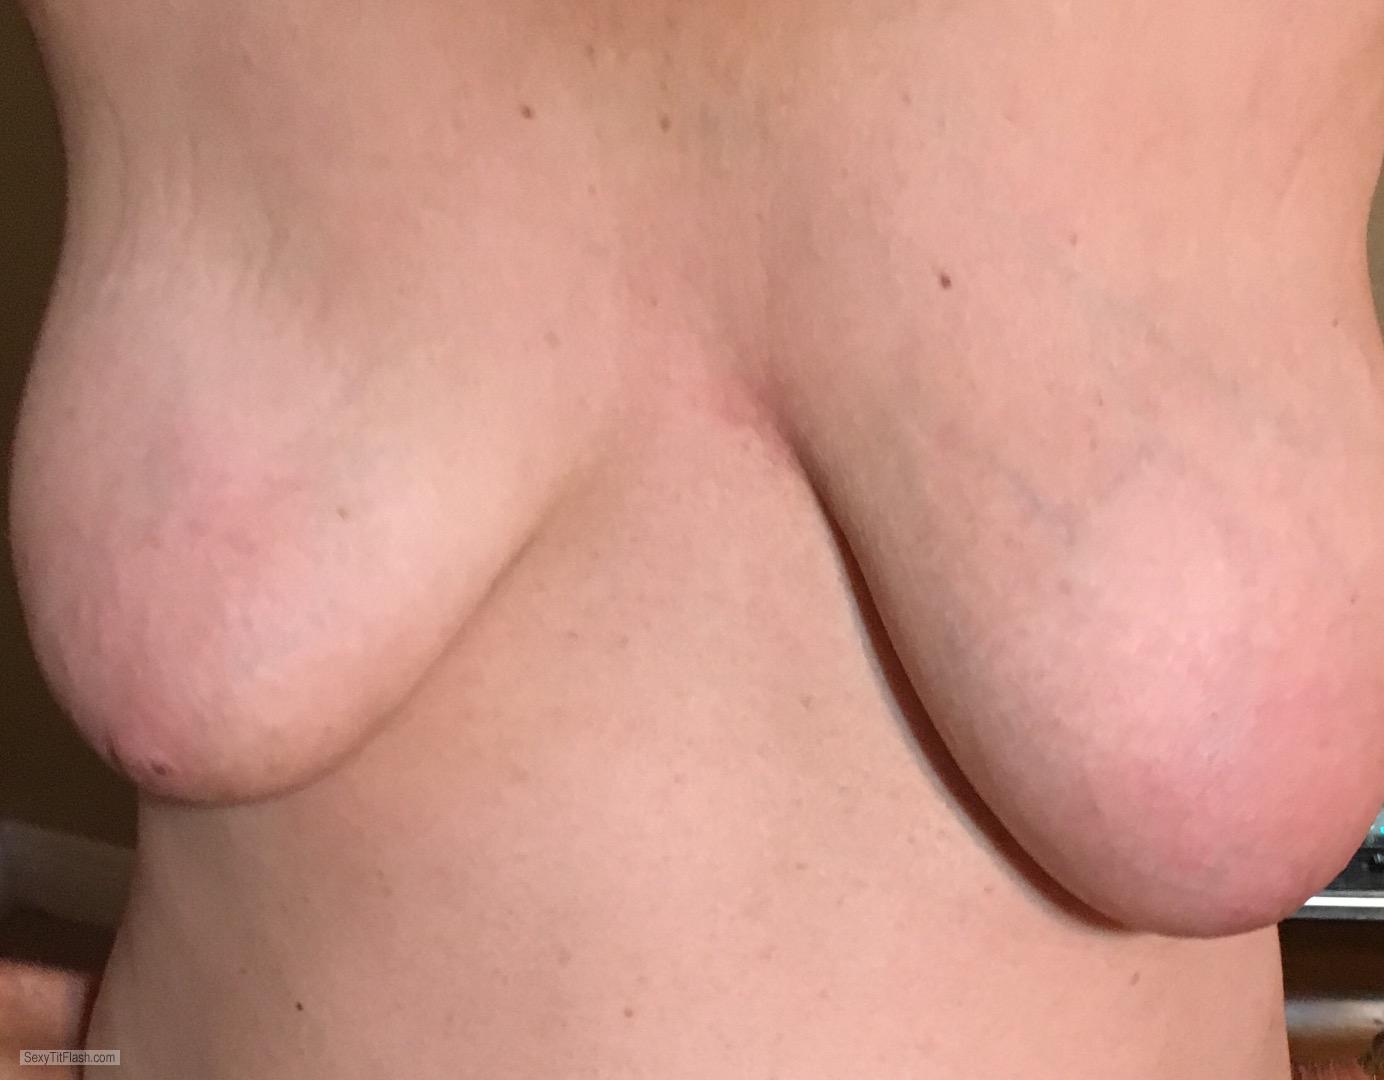 Tit Flash: My Medium Tits - Suckable Tits from United Kingdom